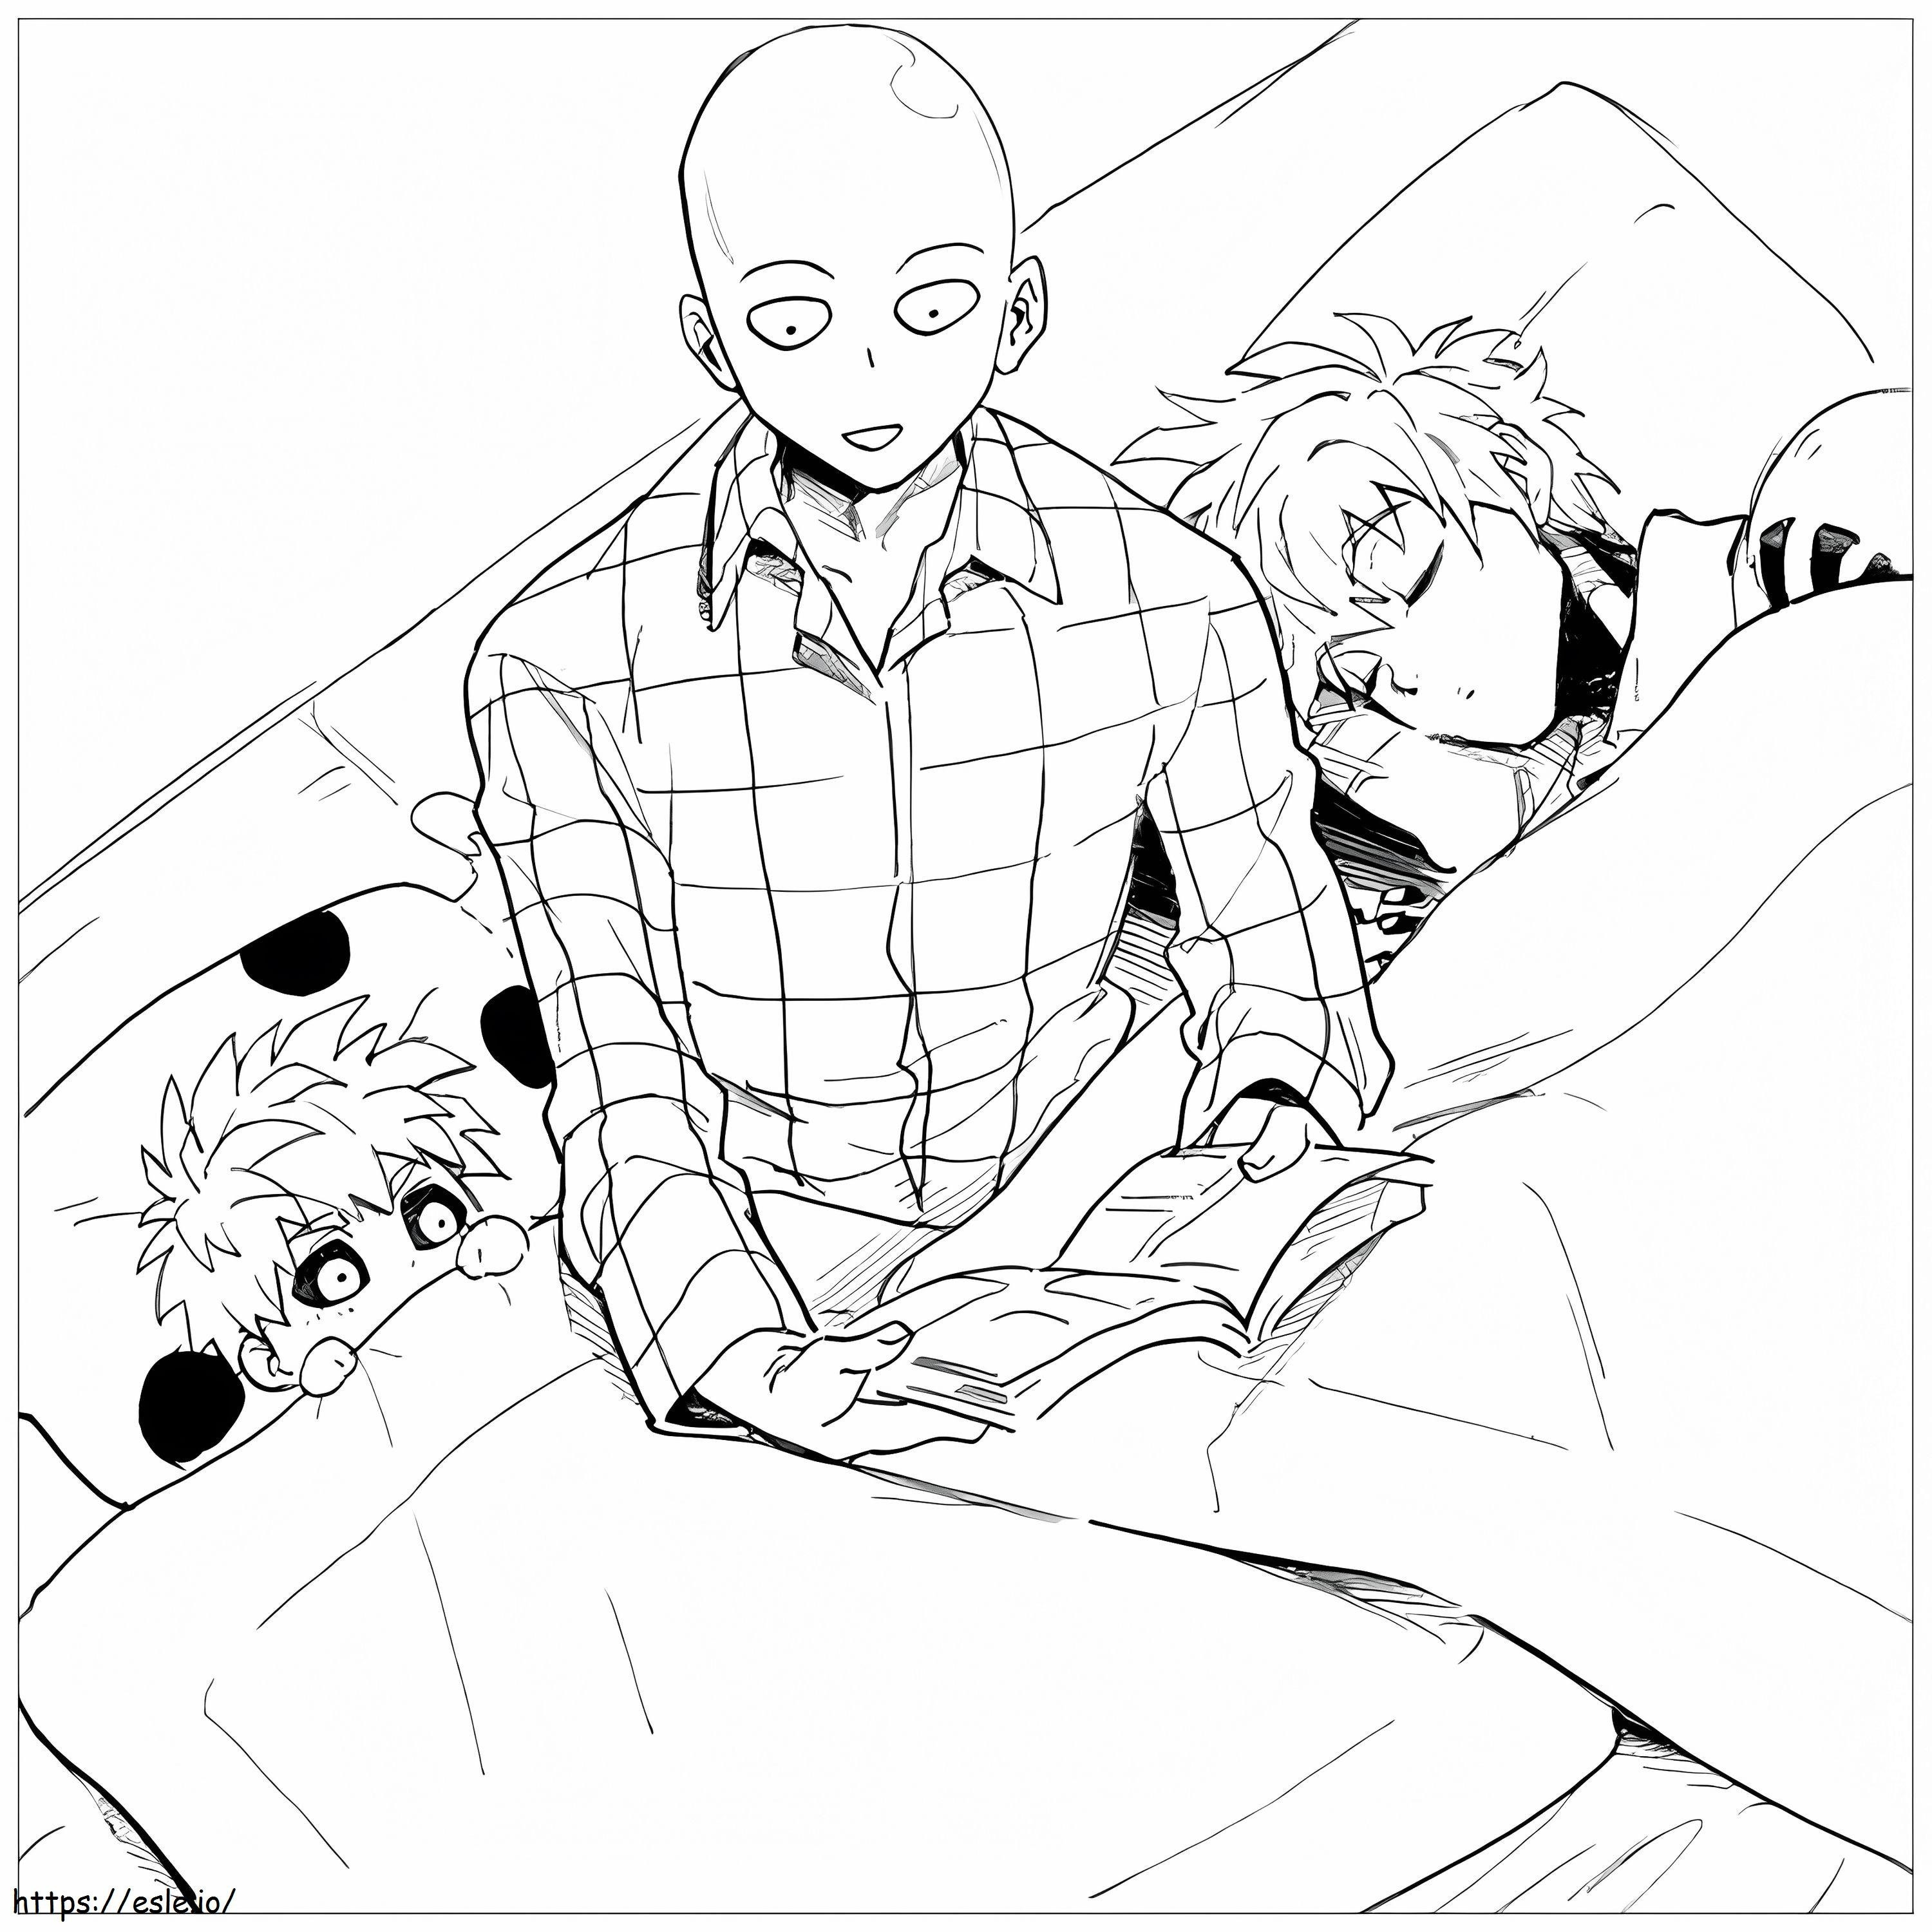 Saitama und Genos im Bett ausmalbilder